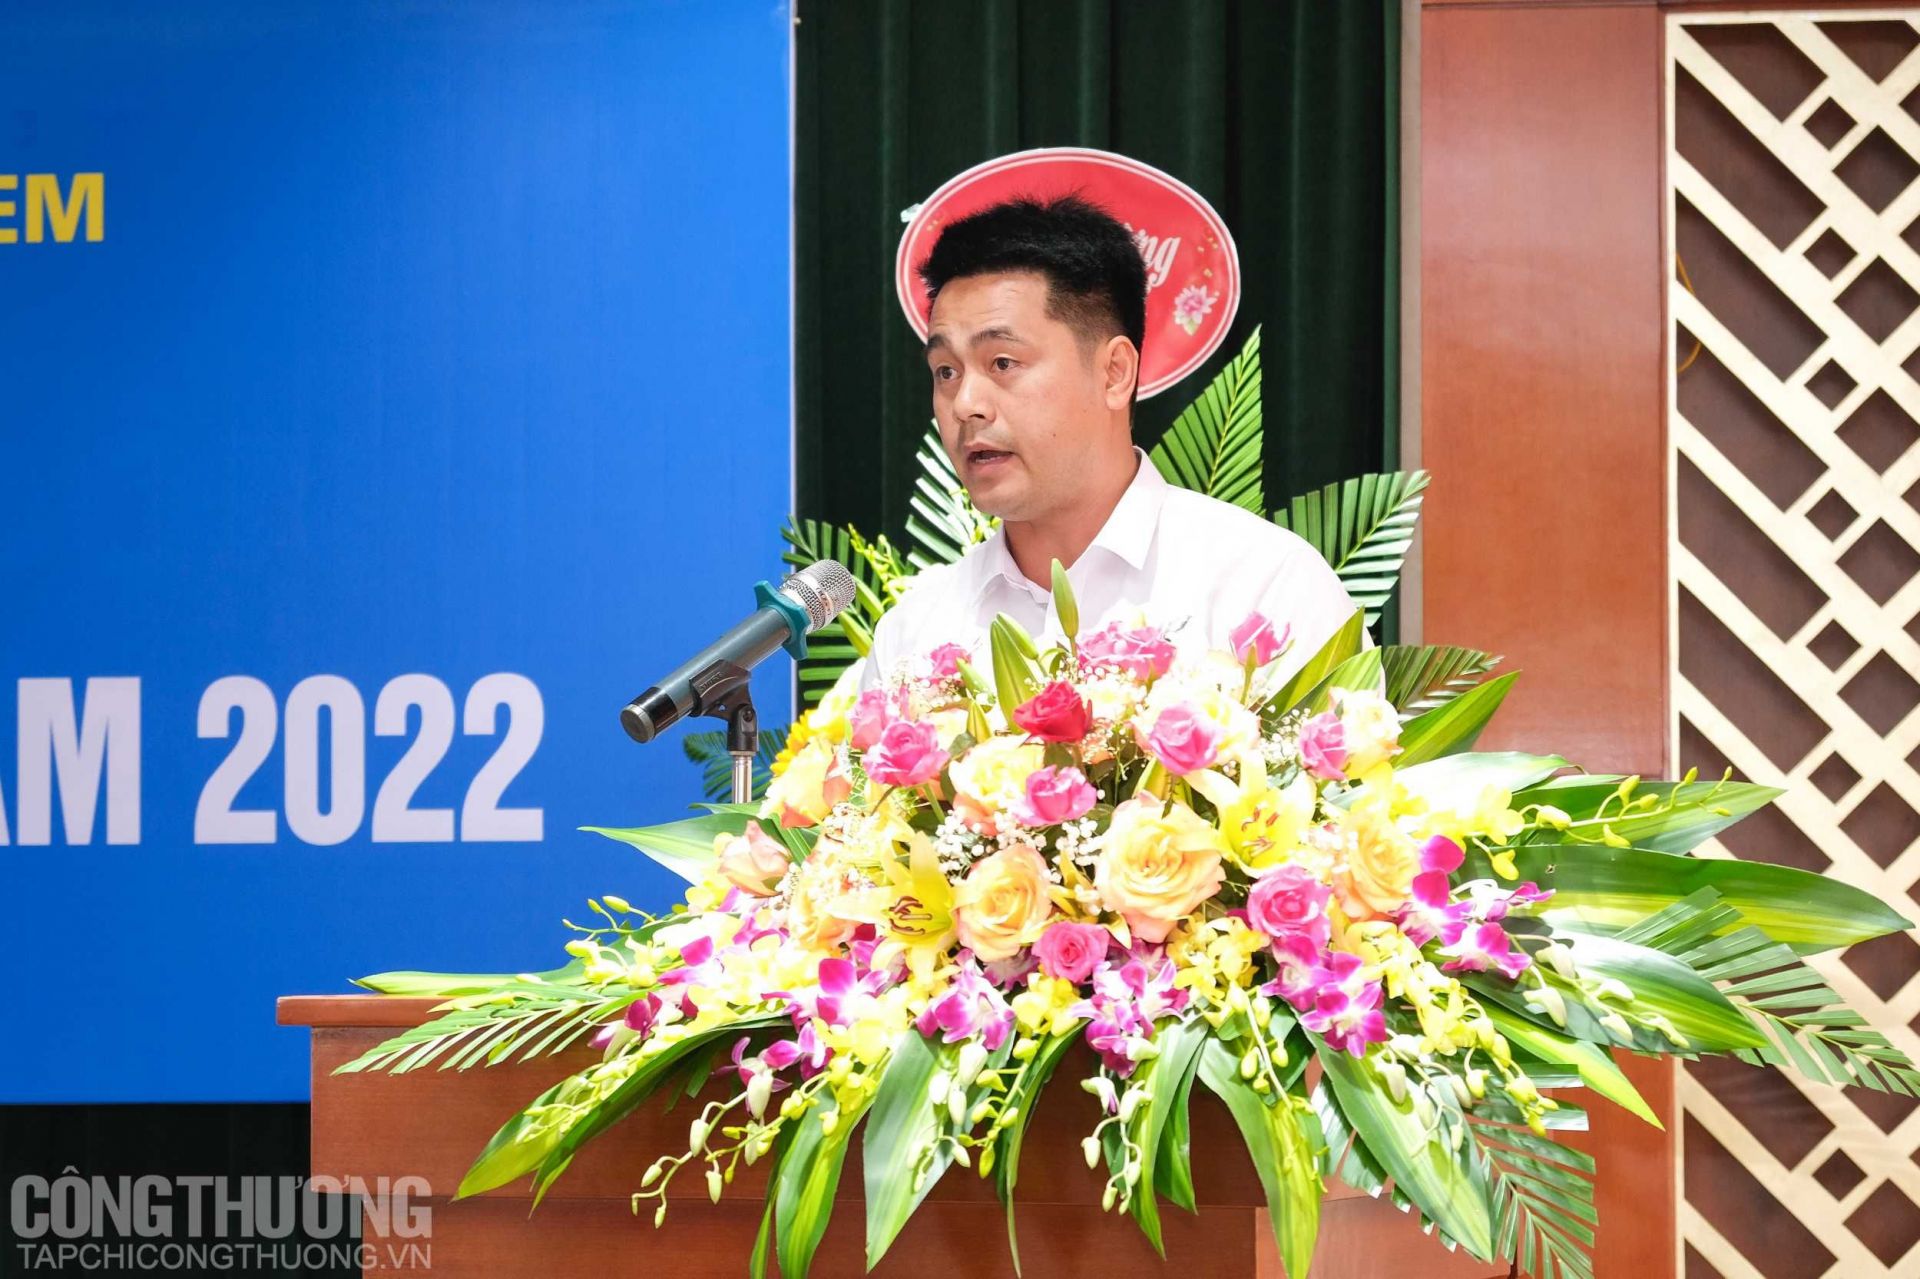 Ông Nguyễn Ánh Dương - Phó Trưởng Phòng Kỹ thuật an toàn, Công ty CP DAP-Vinachem trình bày tham luận tại Hội nghị